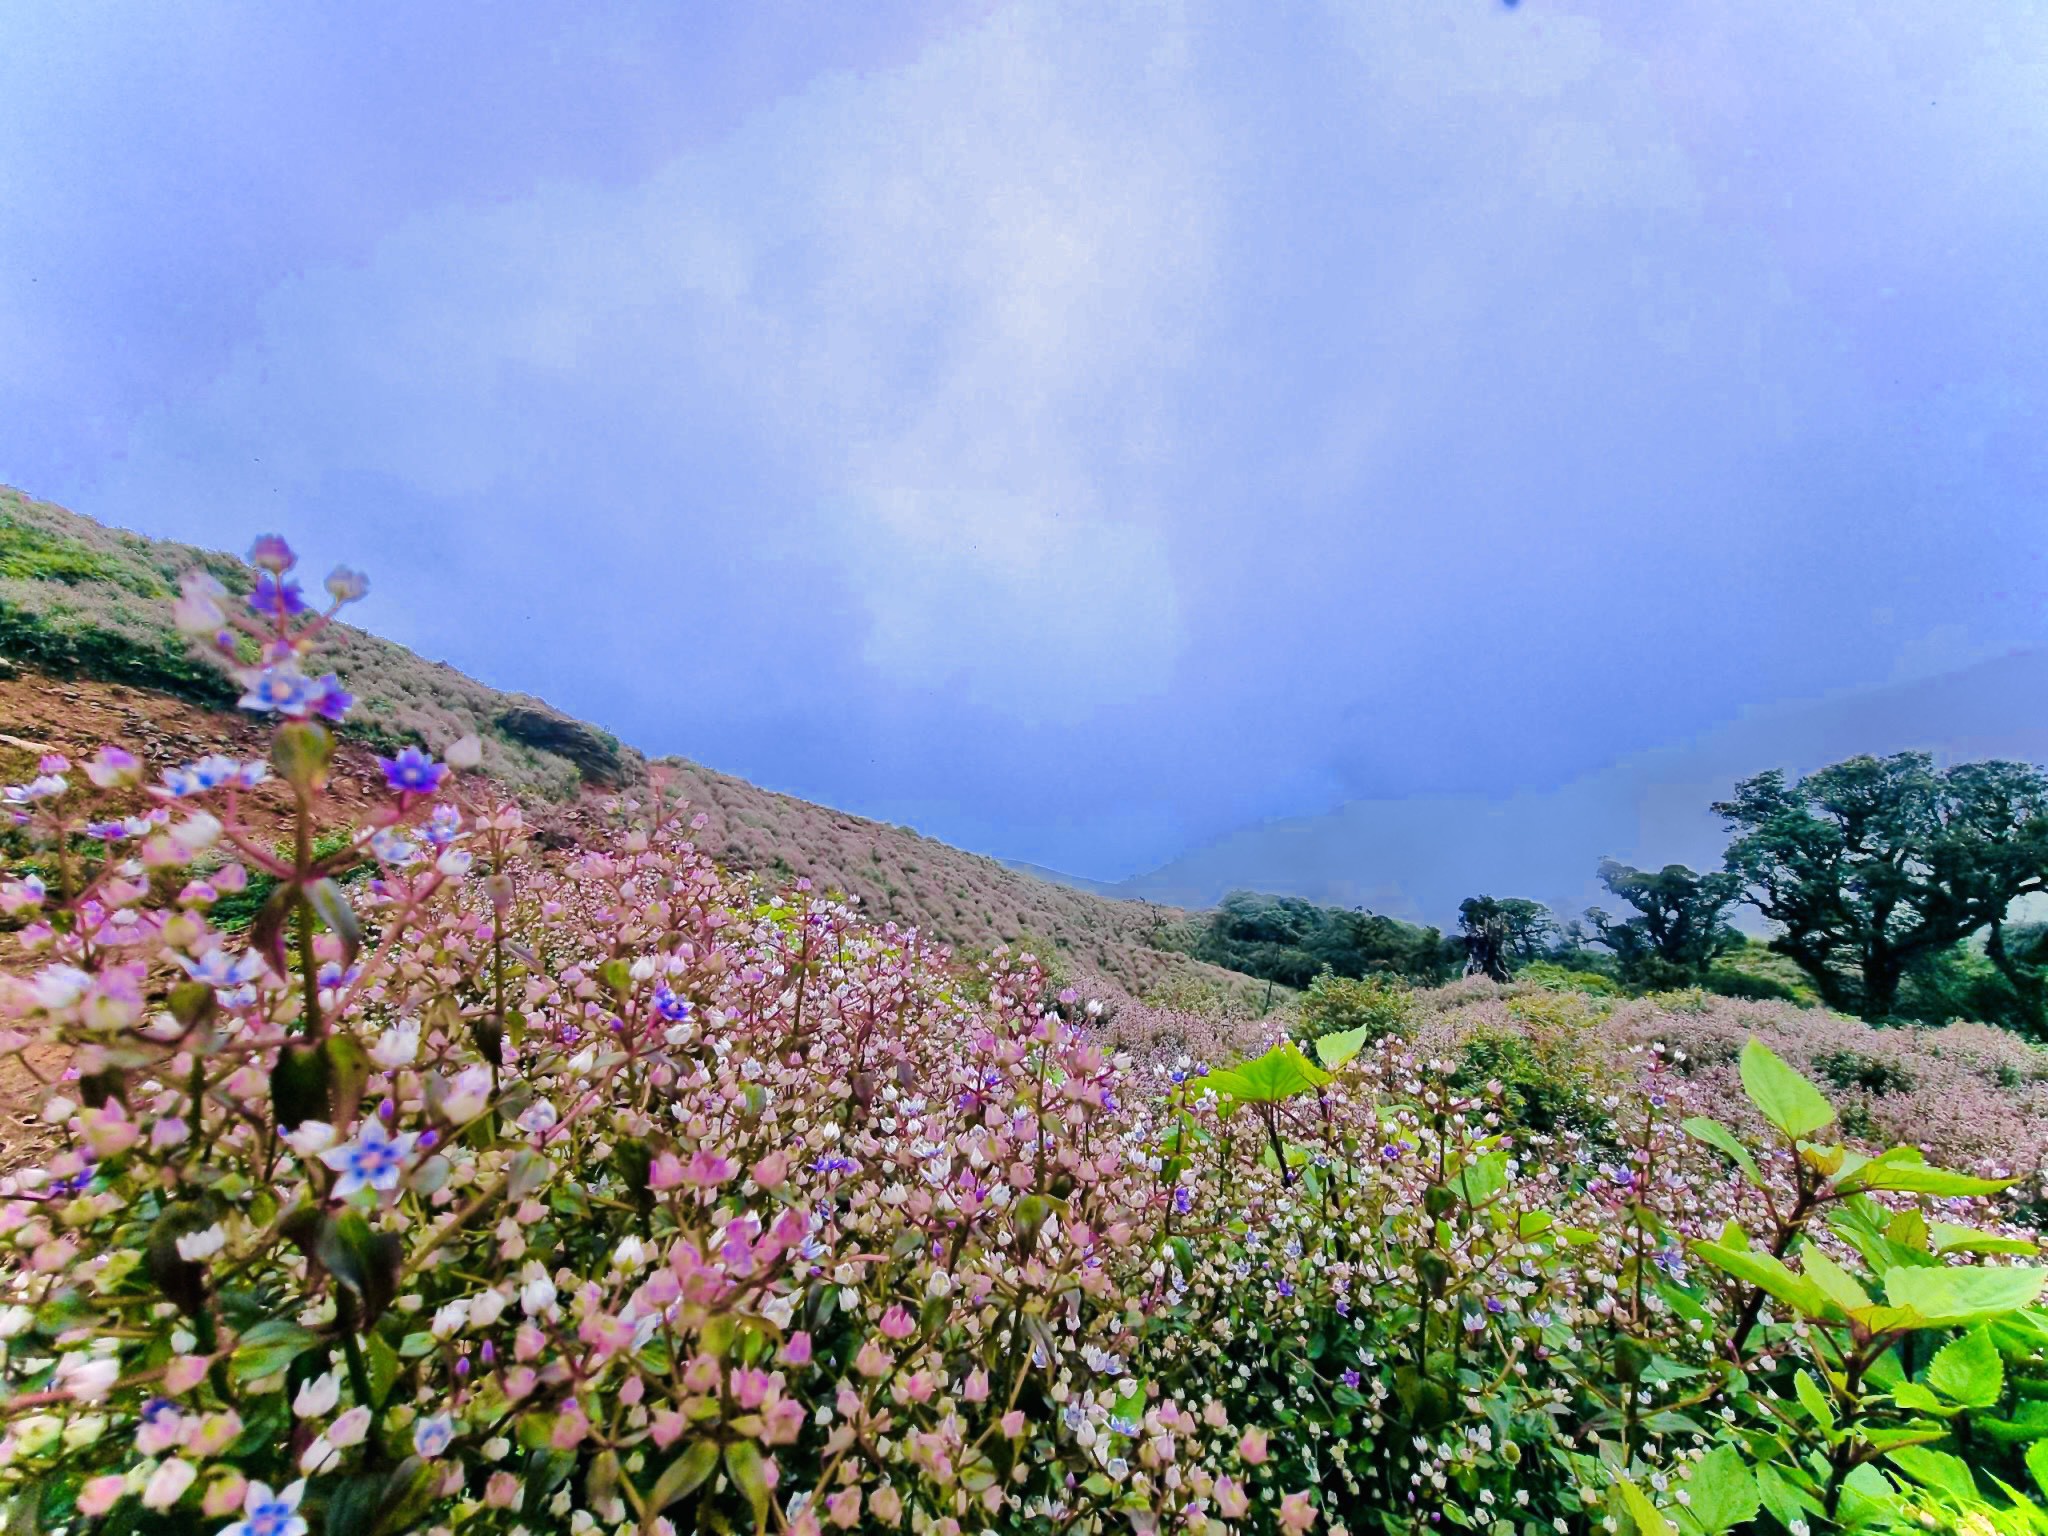 Chinh phục thiên đường mây, mê mẩn ngắm loài hoa đẹp như mơ nơi đỉnh núi